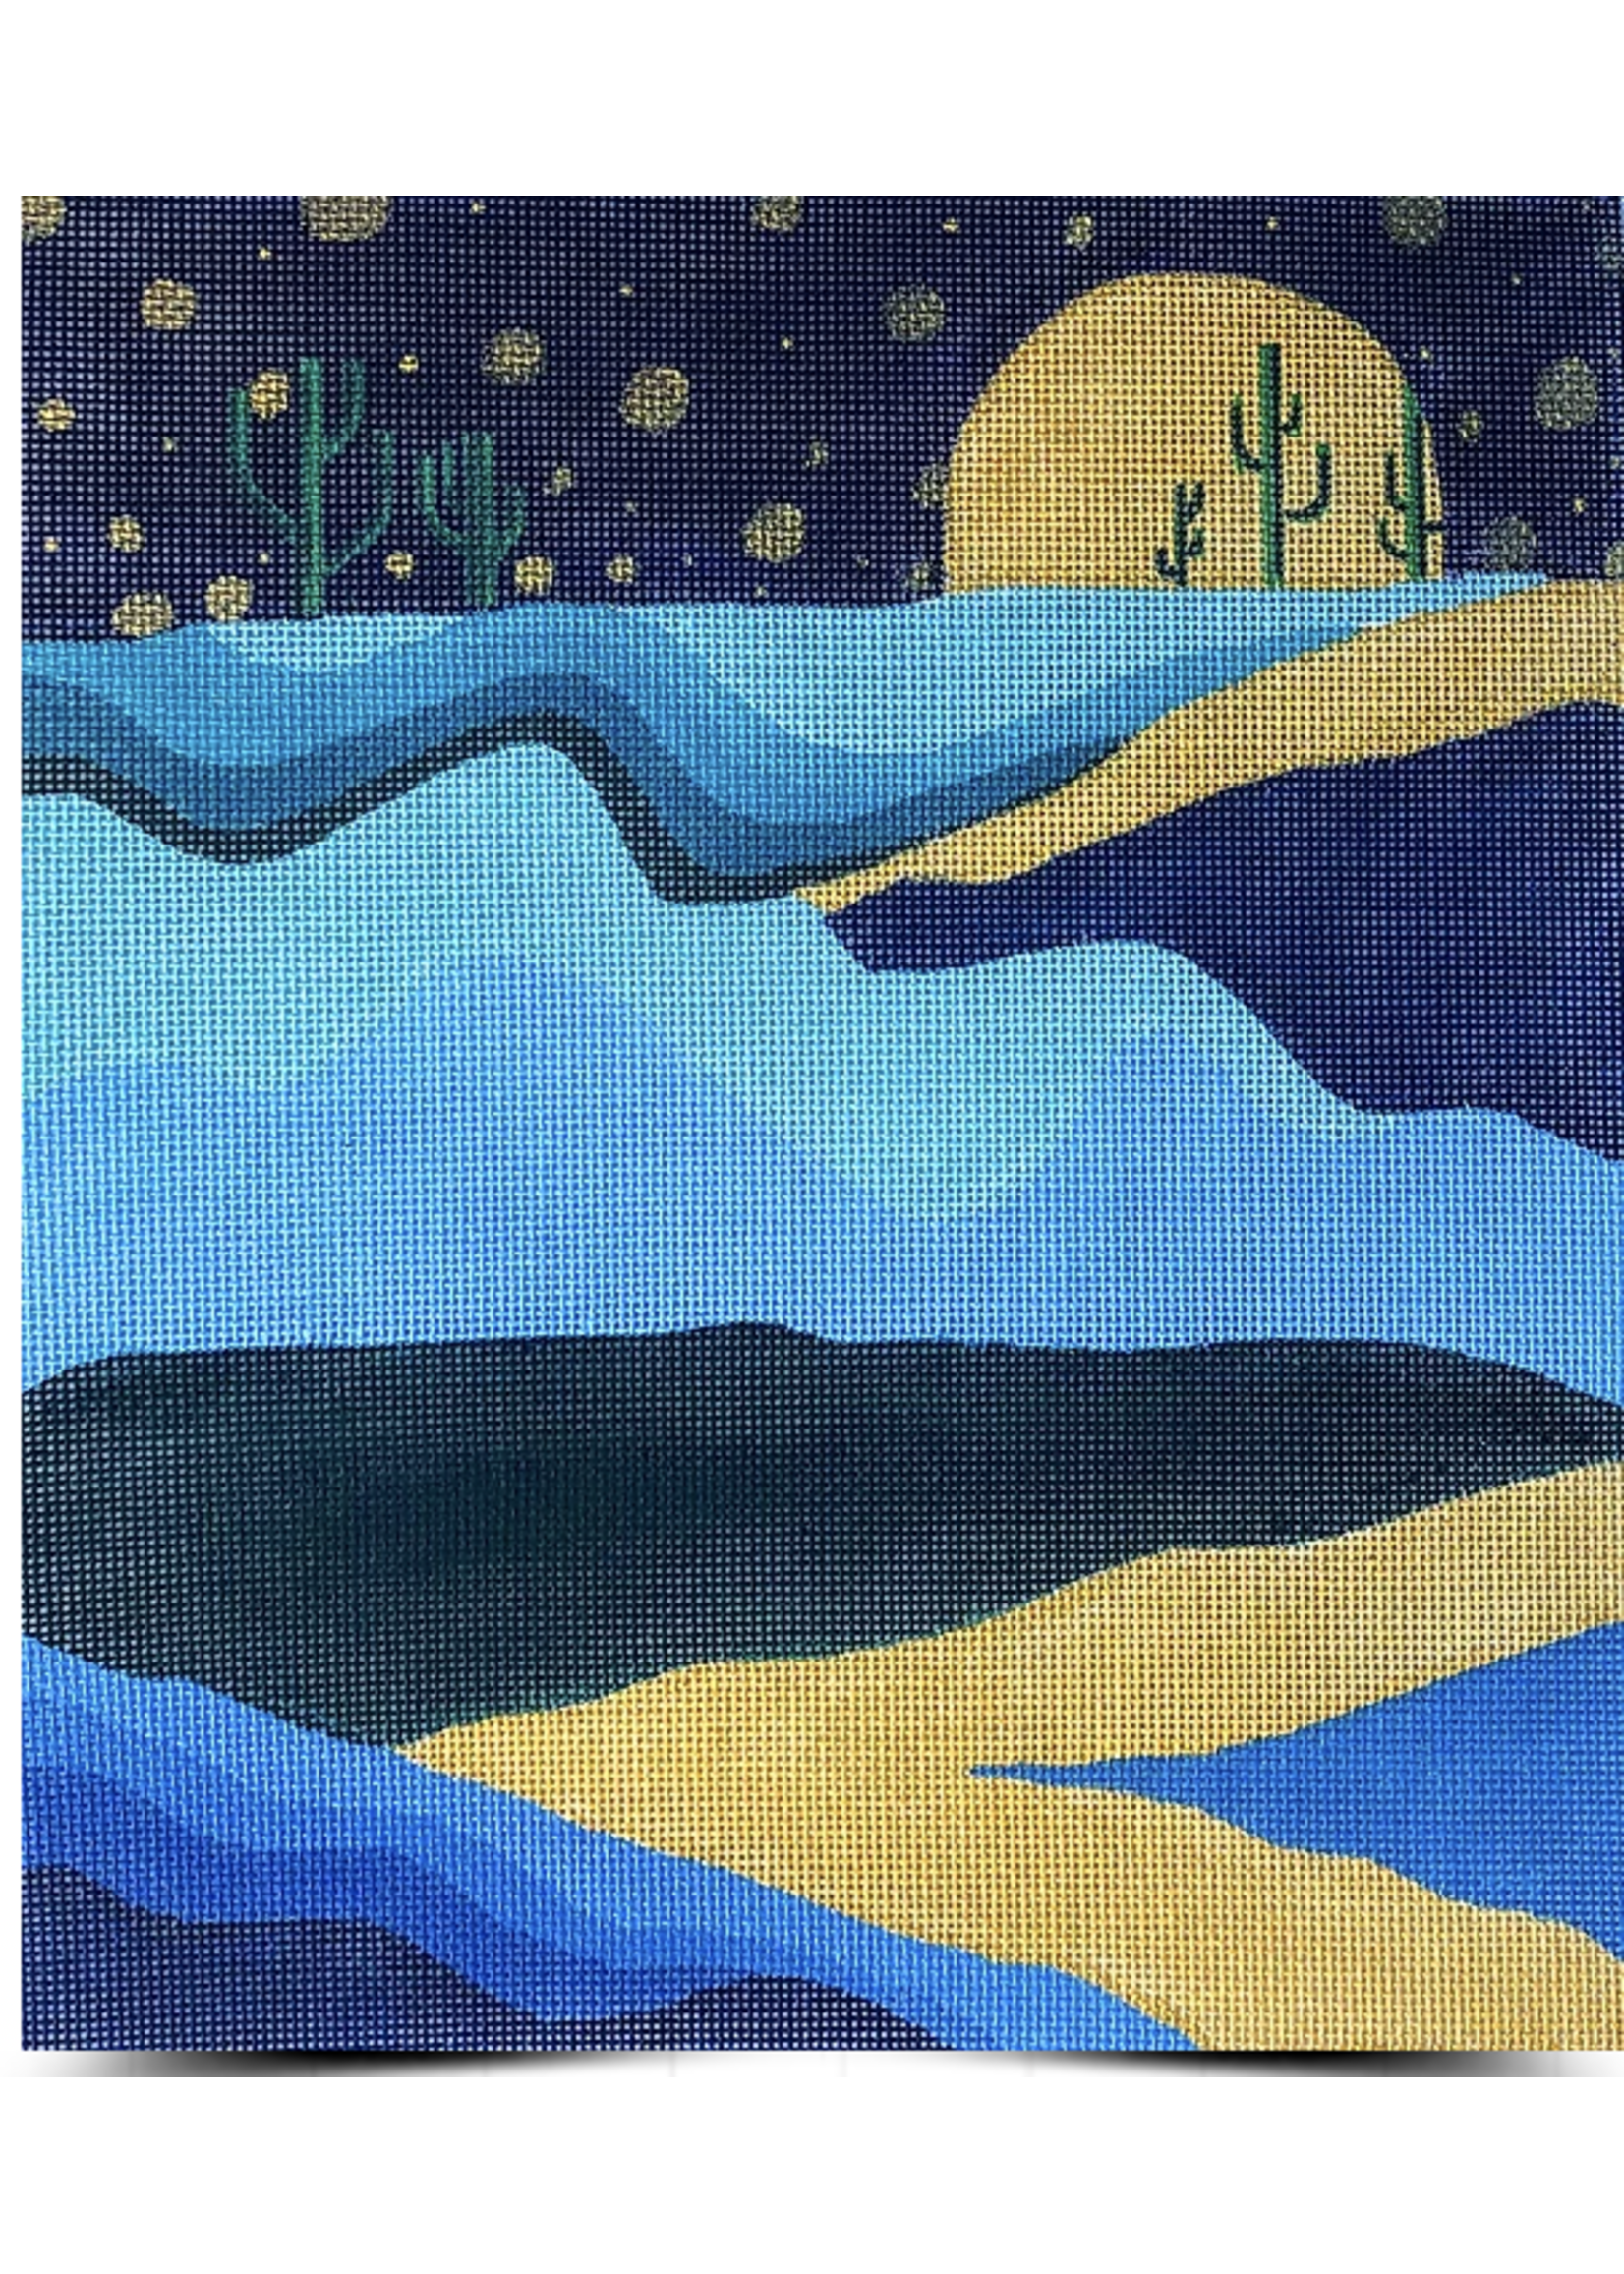 L1 - Moonset Desert